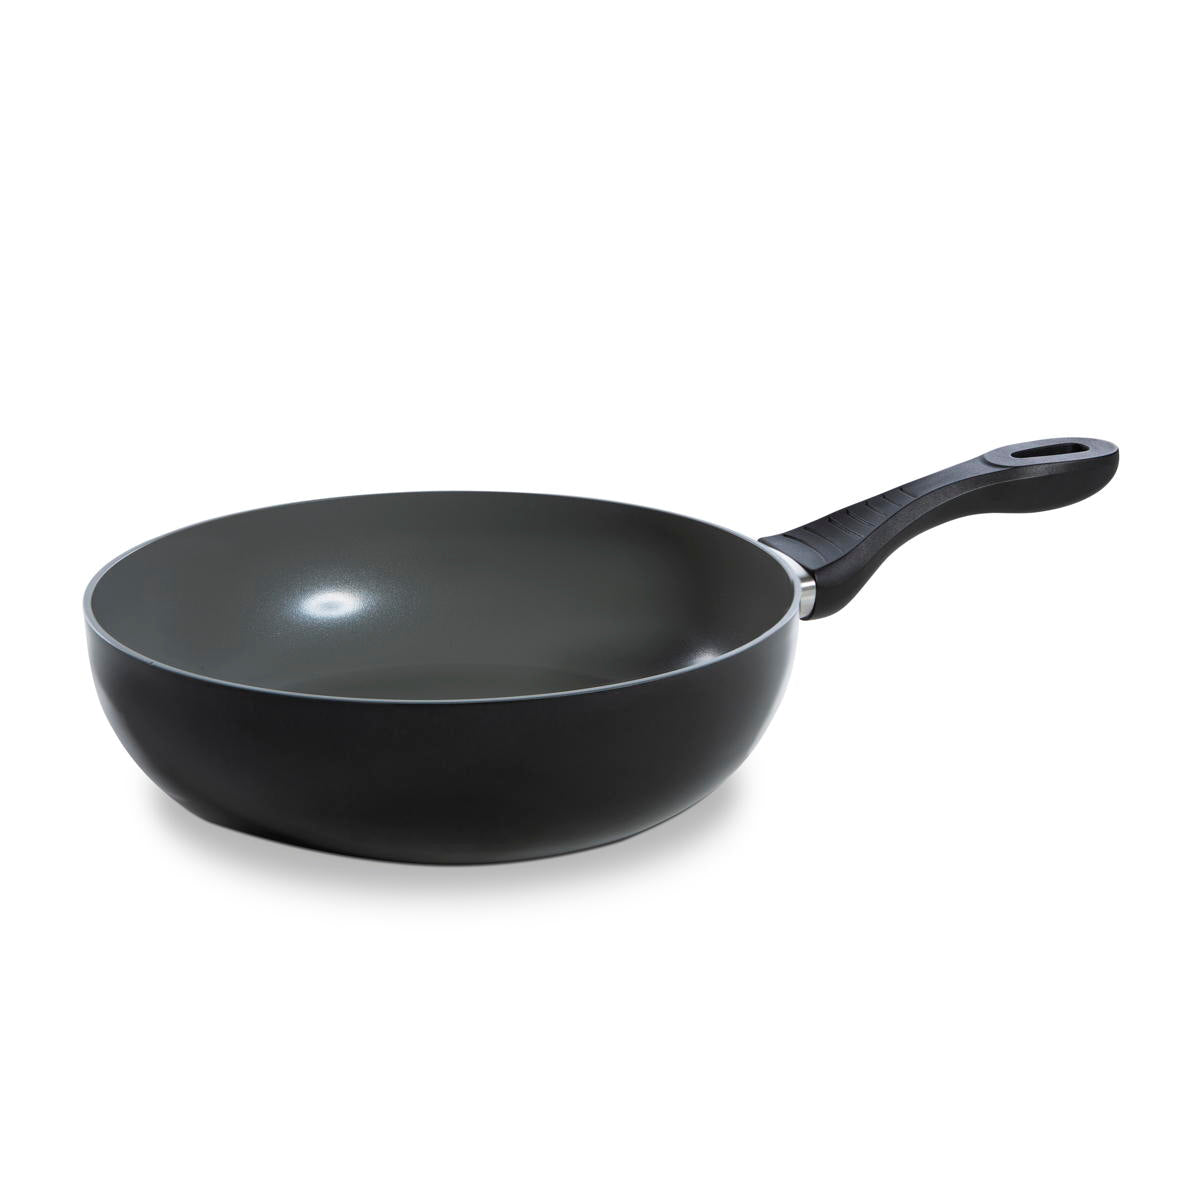 Easy Basic Ceramic pannenset 8-delig zwart wokpan